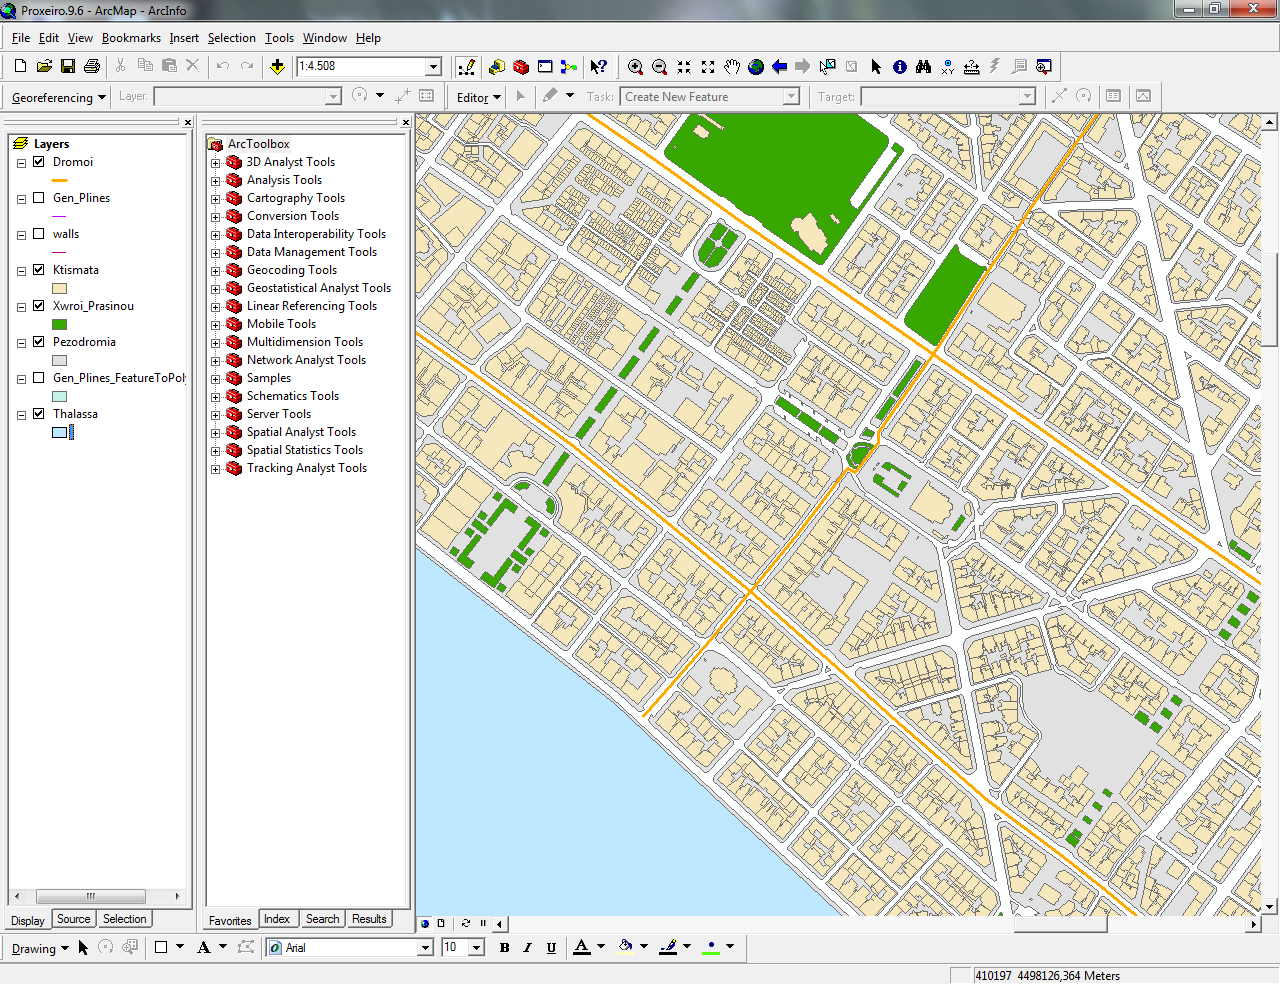 Τρισδιάστατη χαρτογραφική αναπαράσταση αστικών περιοχών με τη χρήση μεταβαλλόμενης προοπτικής: εφαρμογή στη Θεσσαλονίκη Εικόνα 6.4.